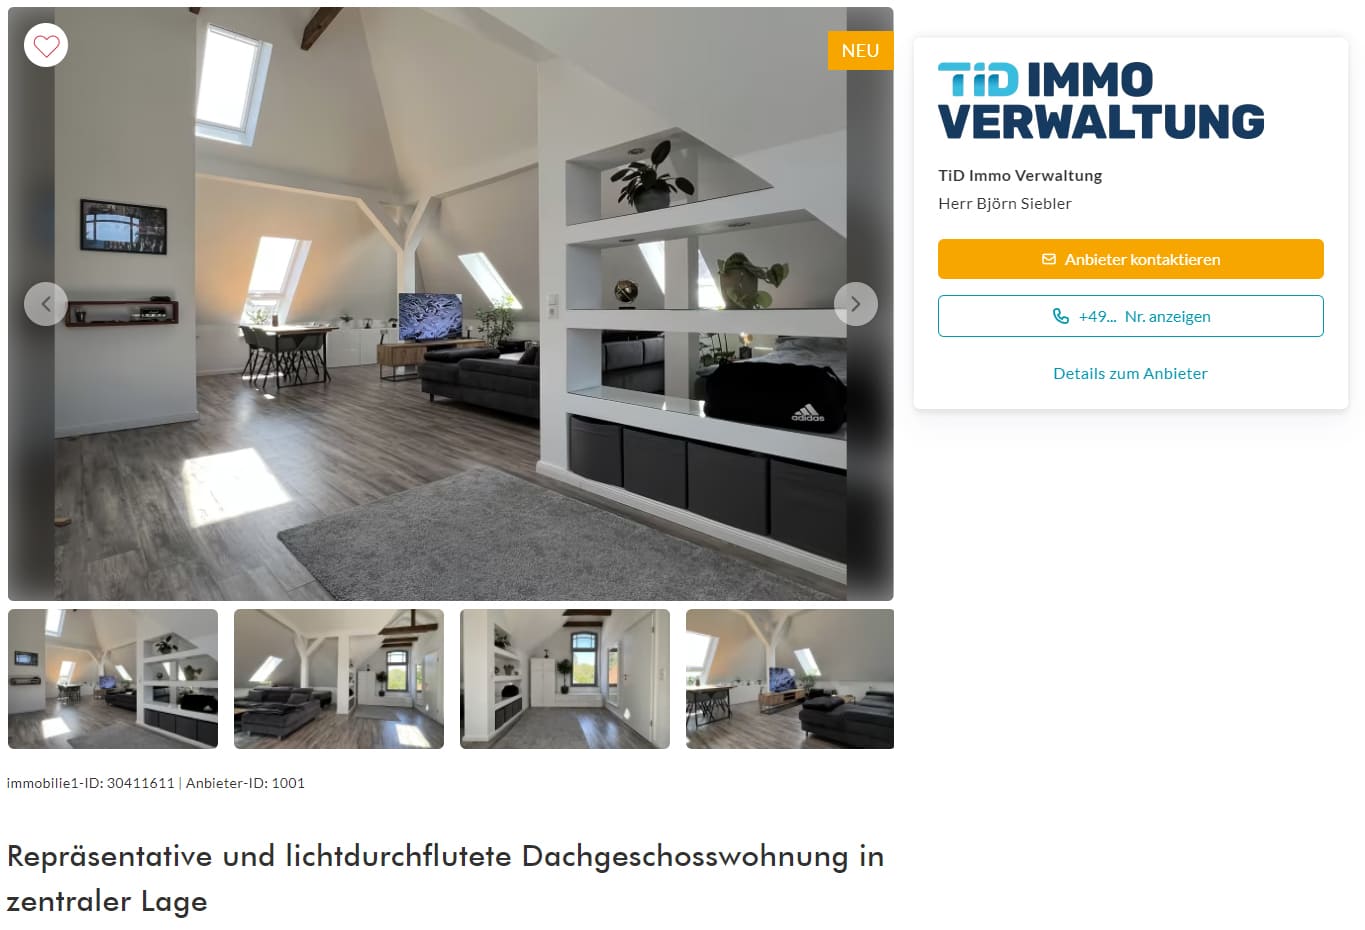 Dachgeschosswohnung als Immobilie in Oldenburg